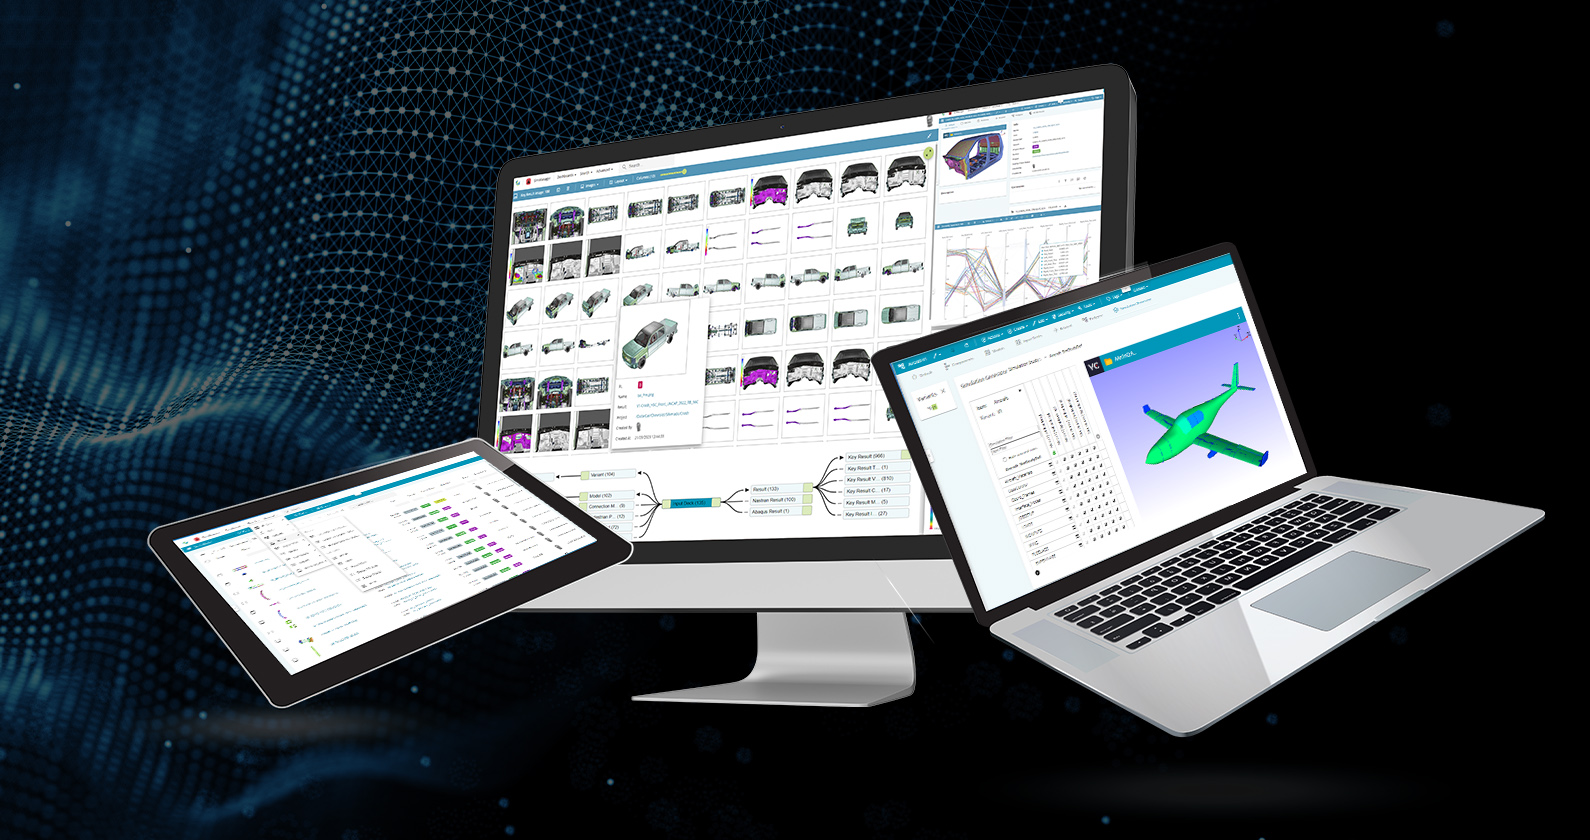 SimManager シミュレーション ソフトウェアが、濃い青黒の背景にタブレット、デスクトップ、ラップトップの 3 つの異なるデバイスに表示されています。